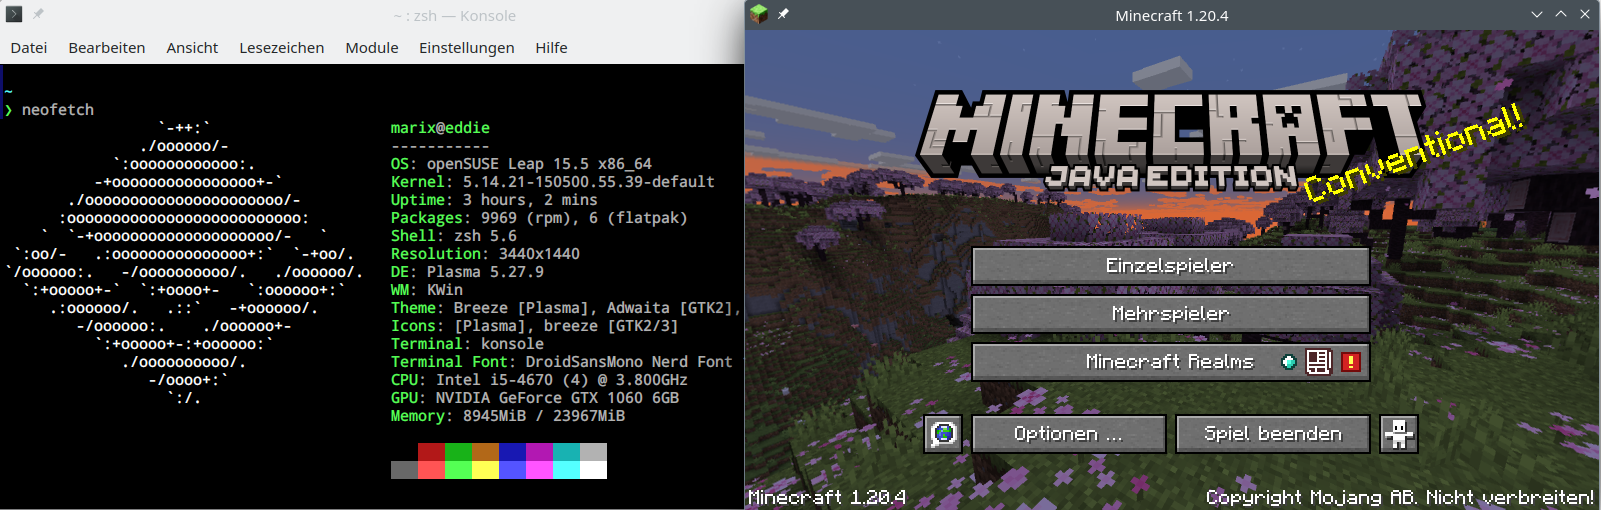 Bildschirmfoto eines laufenden Minecraft 1.20.4 auf openSUSE Leap 15.5